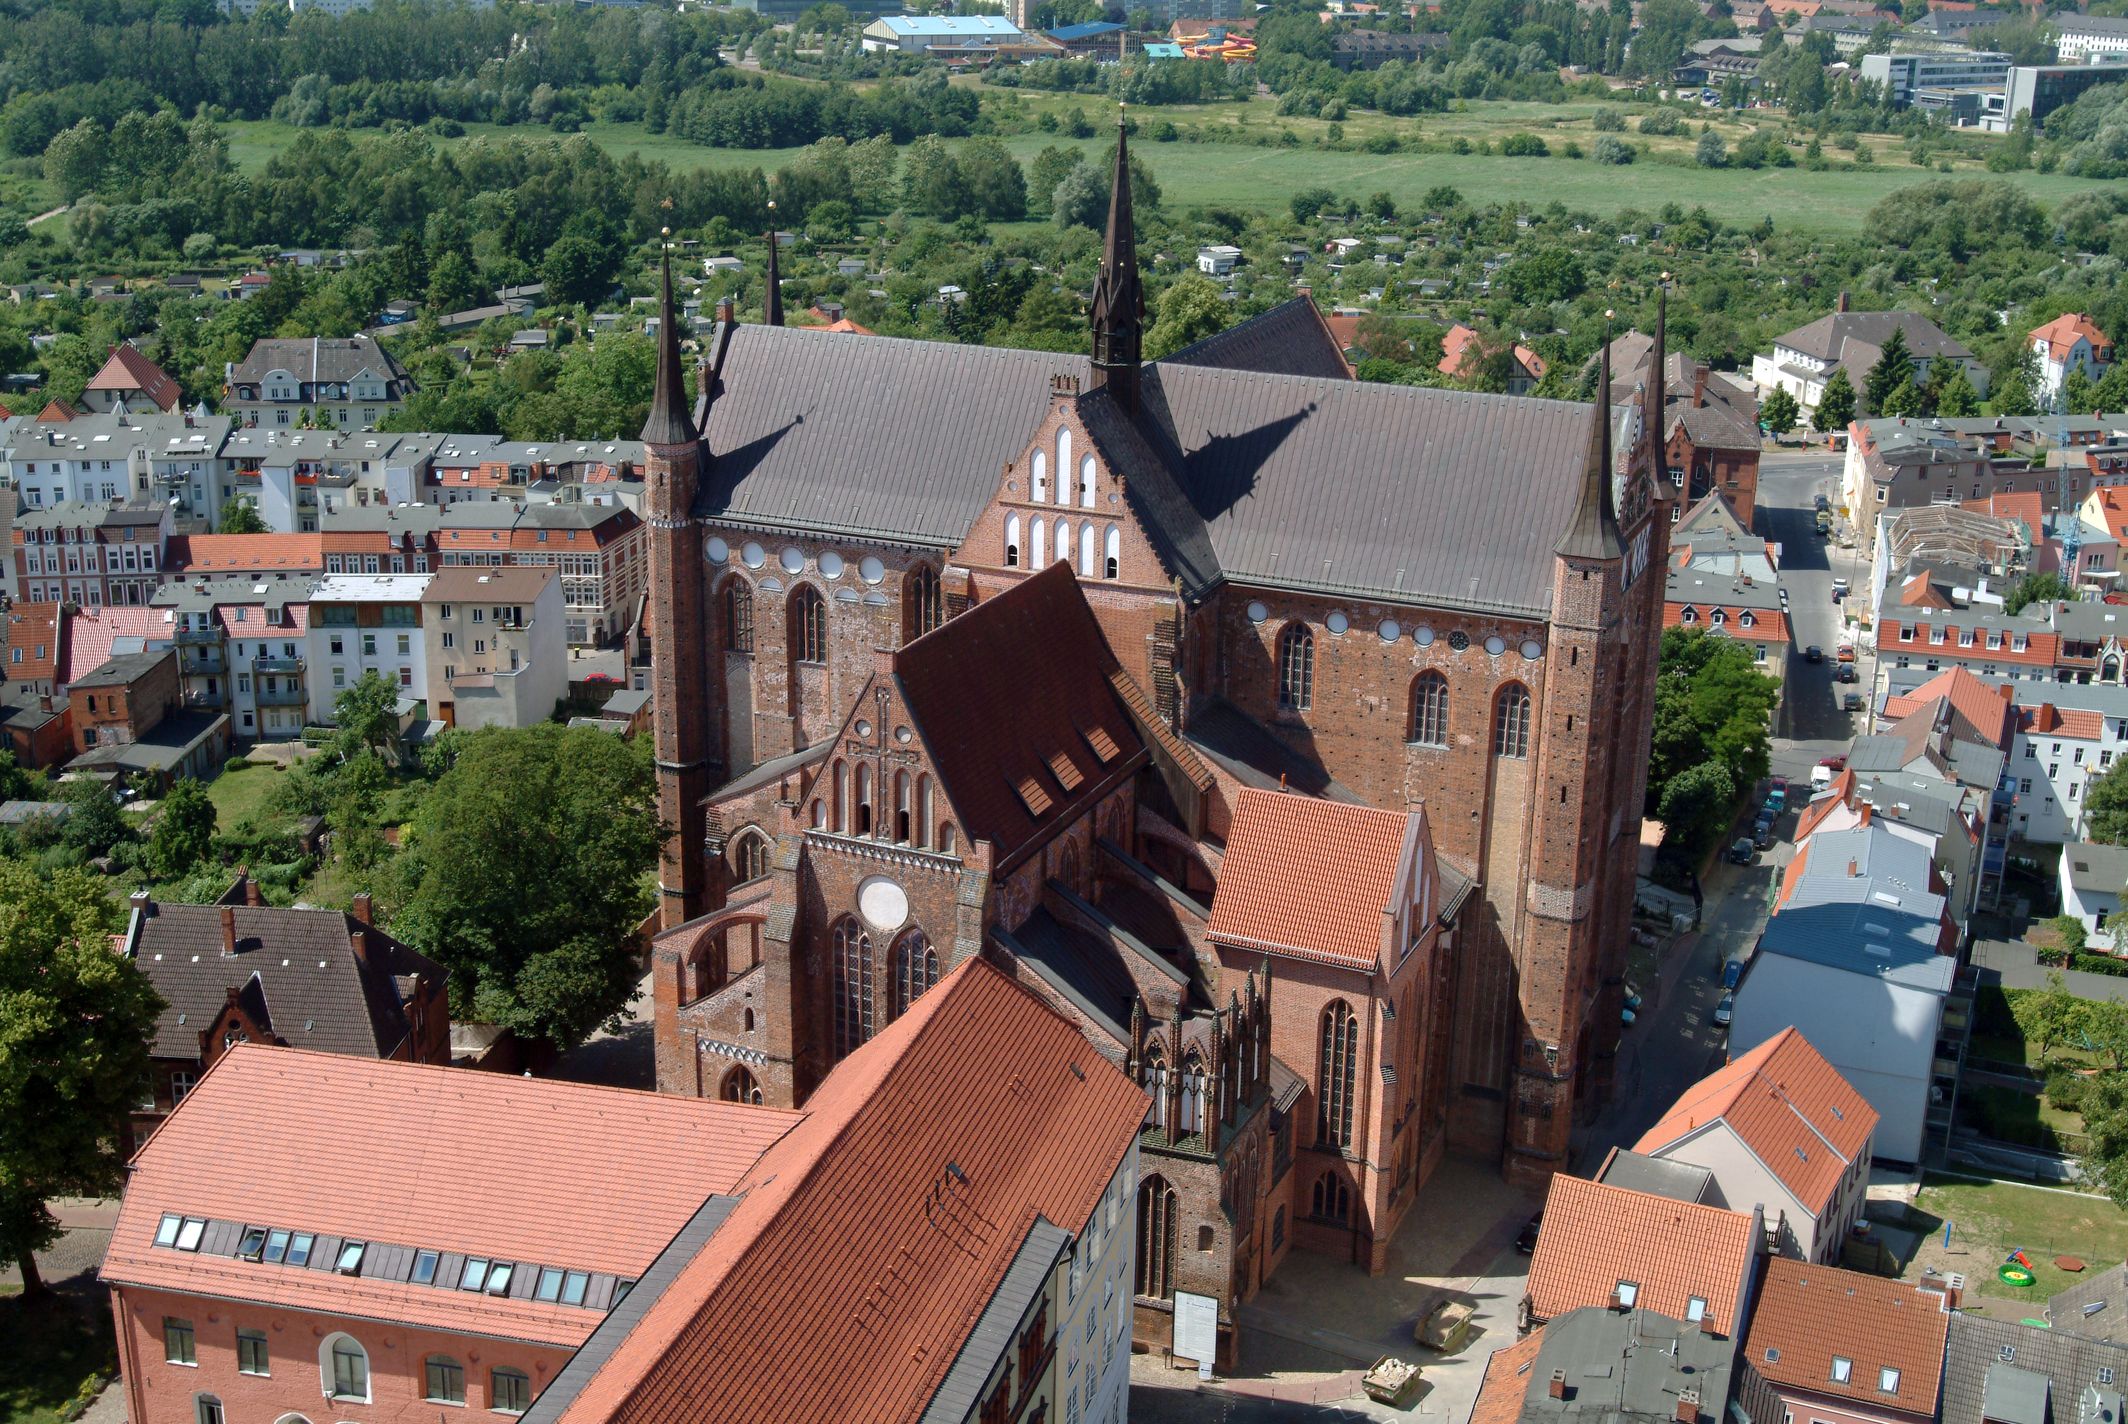 Die St.Georgen Kirche ist eine der drei großen Hauptkirchen Wismars und ein hervorragendes Baudenkmal norddeutscher Backsteingotik.
